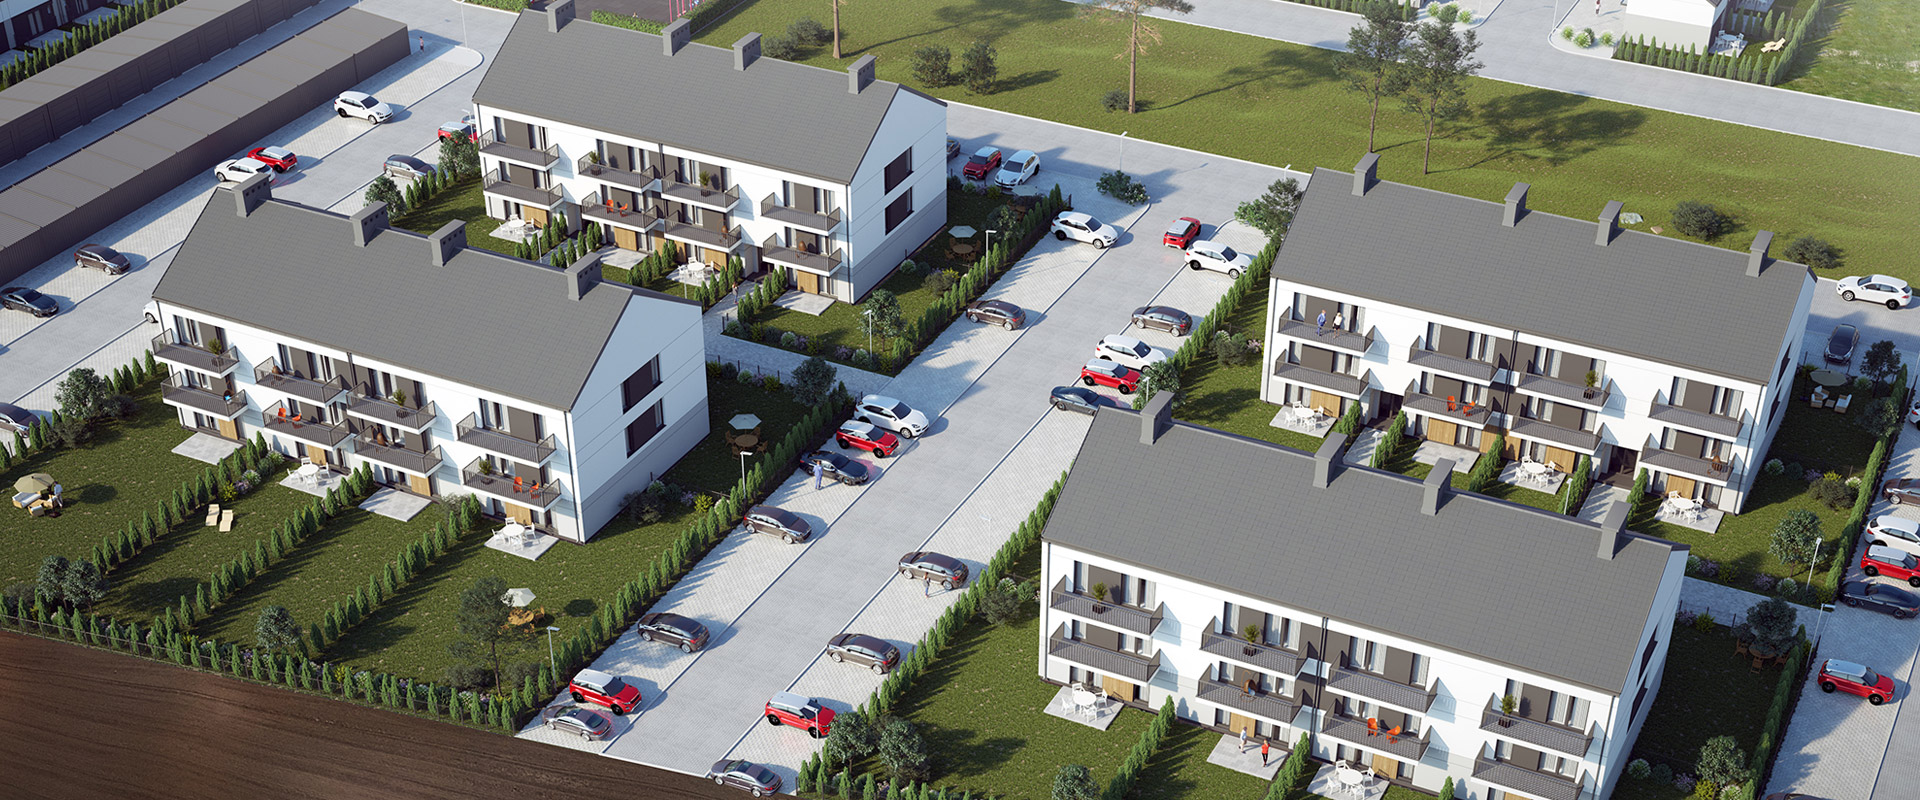 Bloki Mogilno - nowe osiedle i mieszkania